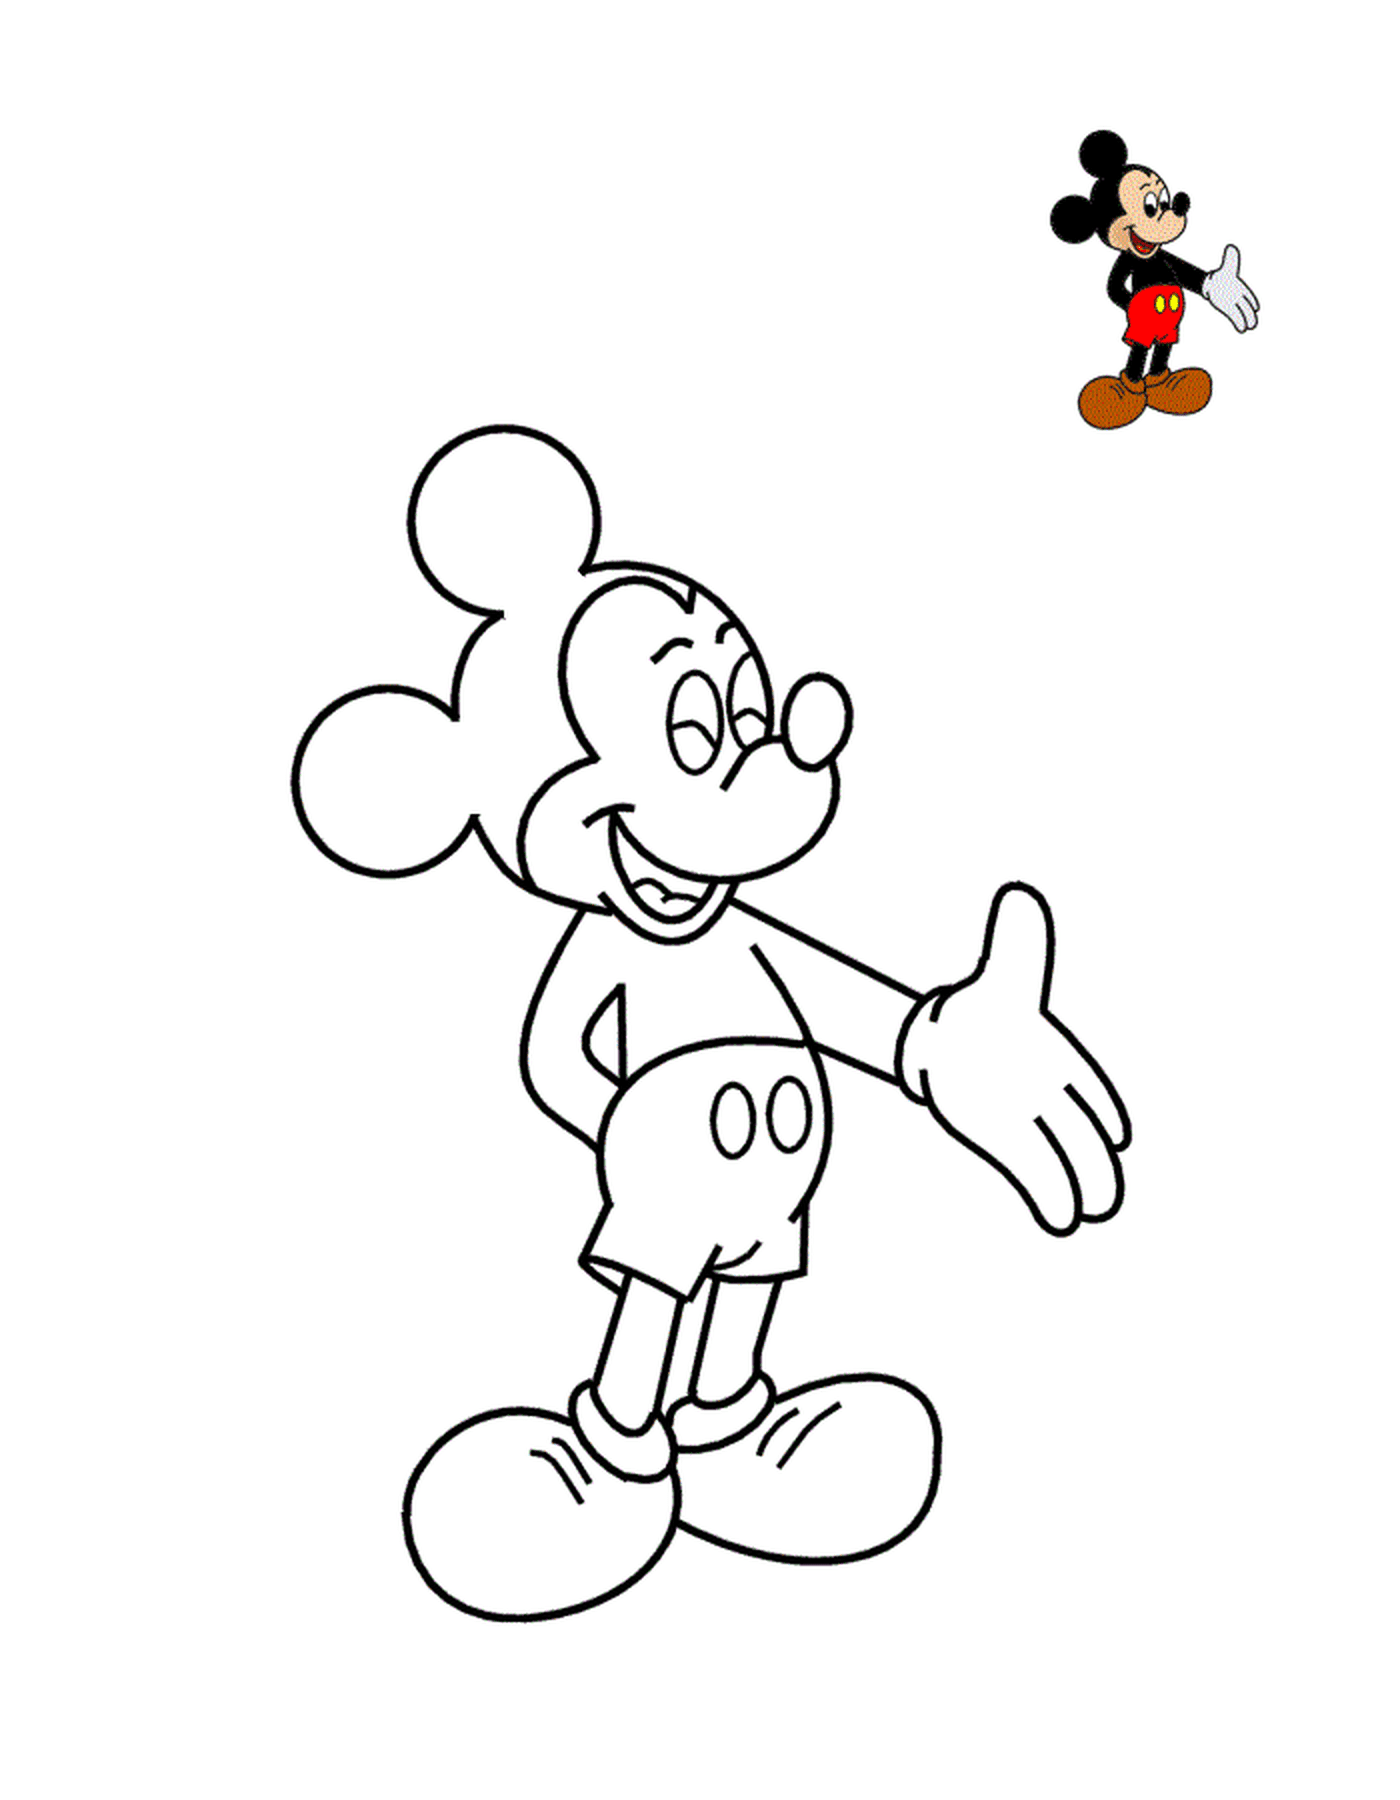  Topolino, simbolo di Disney Land 